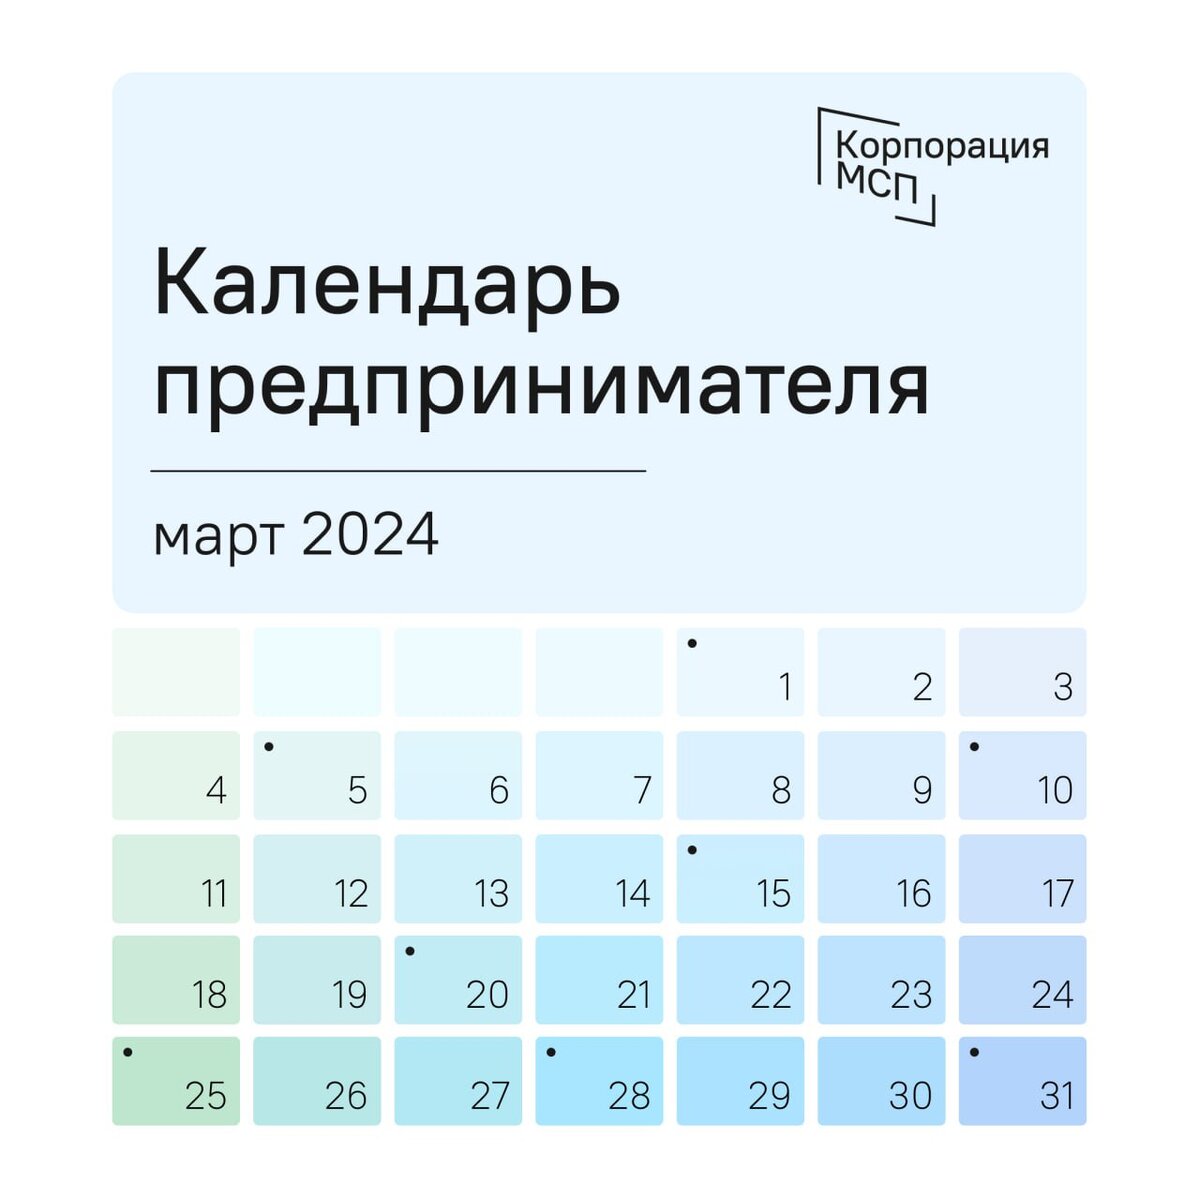 Календарь предпринимателя на март 2024 года.